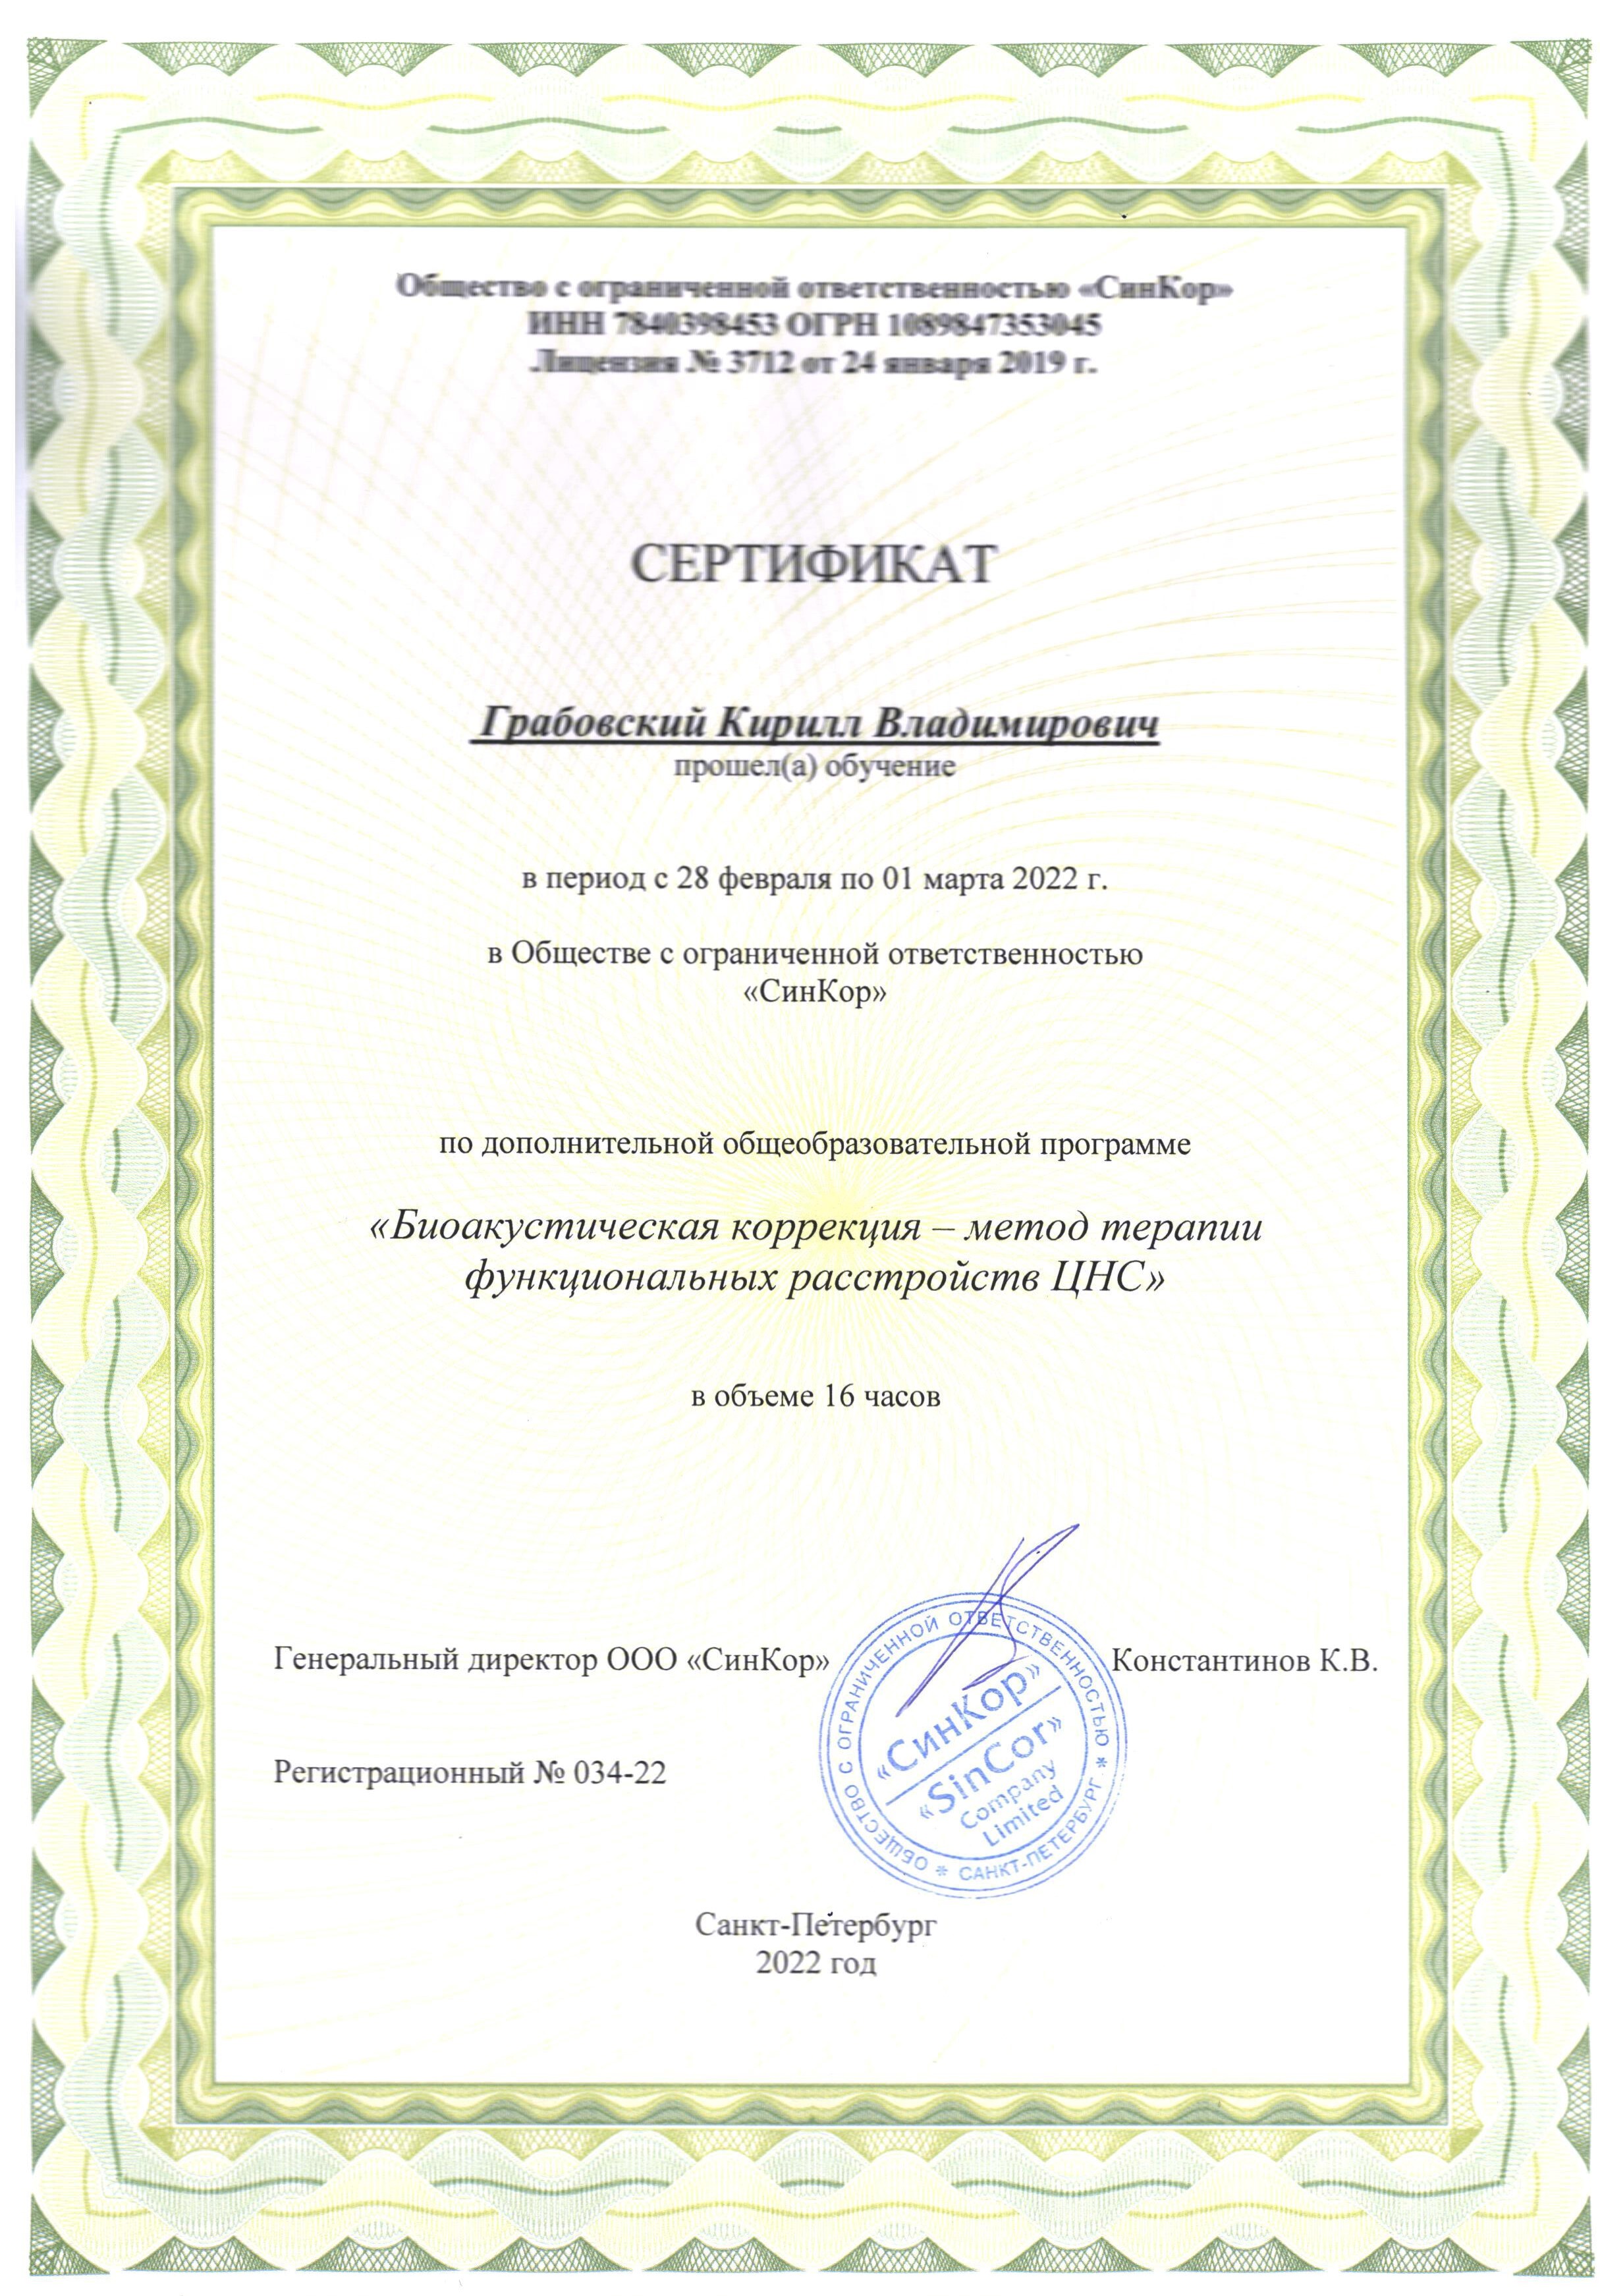 Сертификат БАК